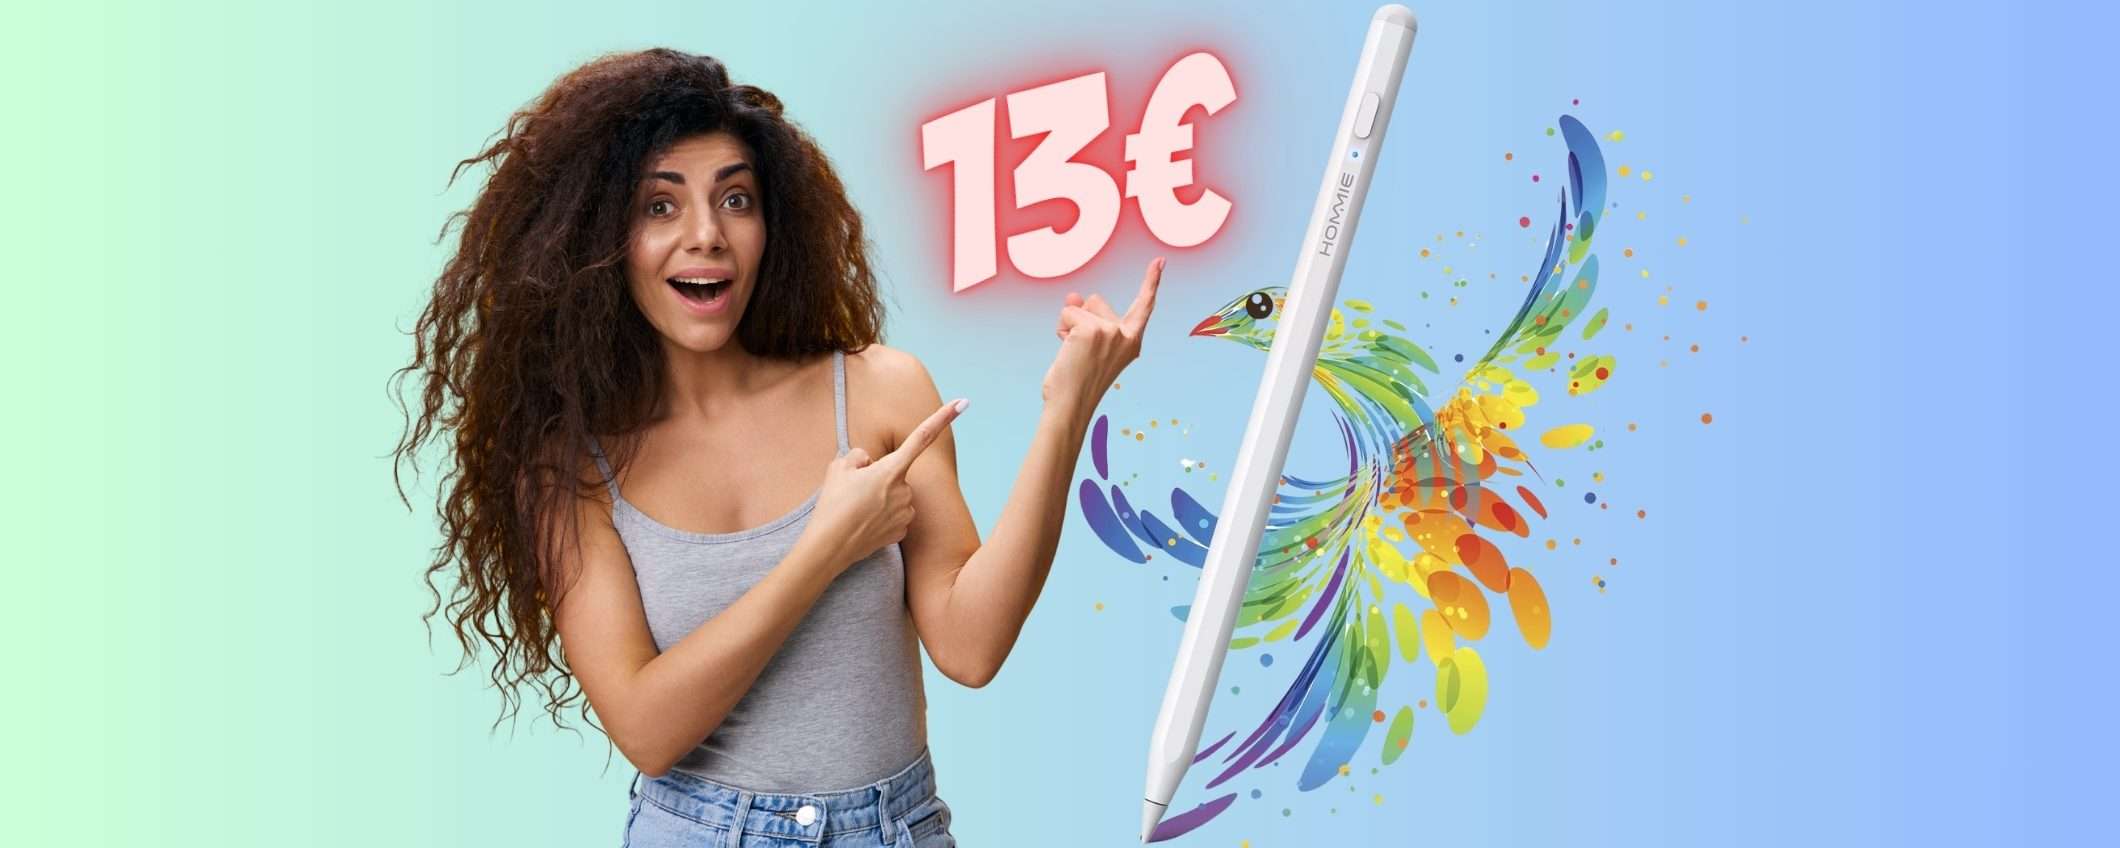 Penna digitale per iPad come Apple Pencil ma a COSTO NULLO (13€)